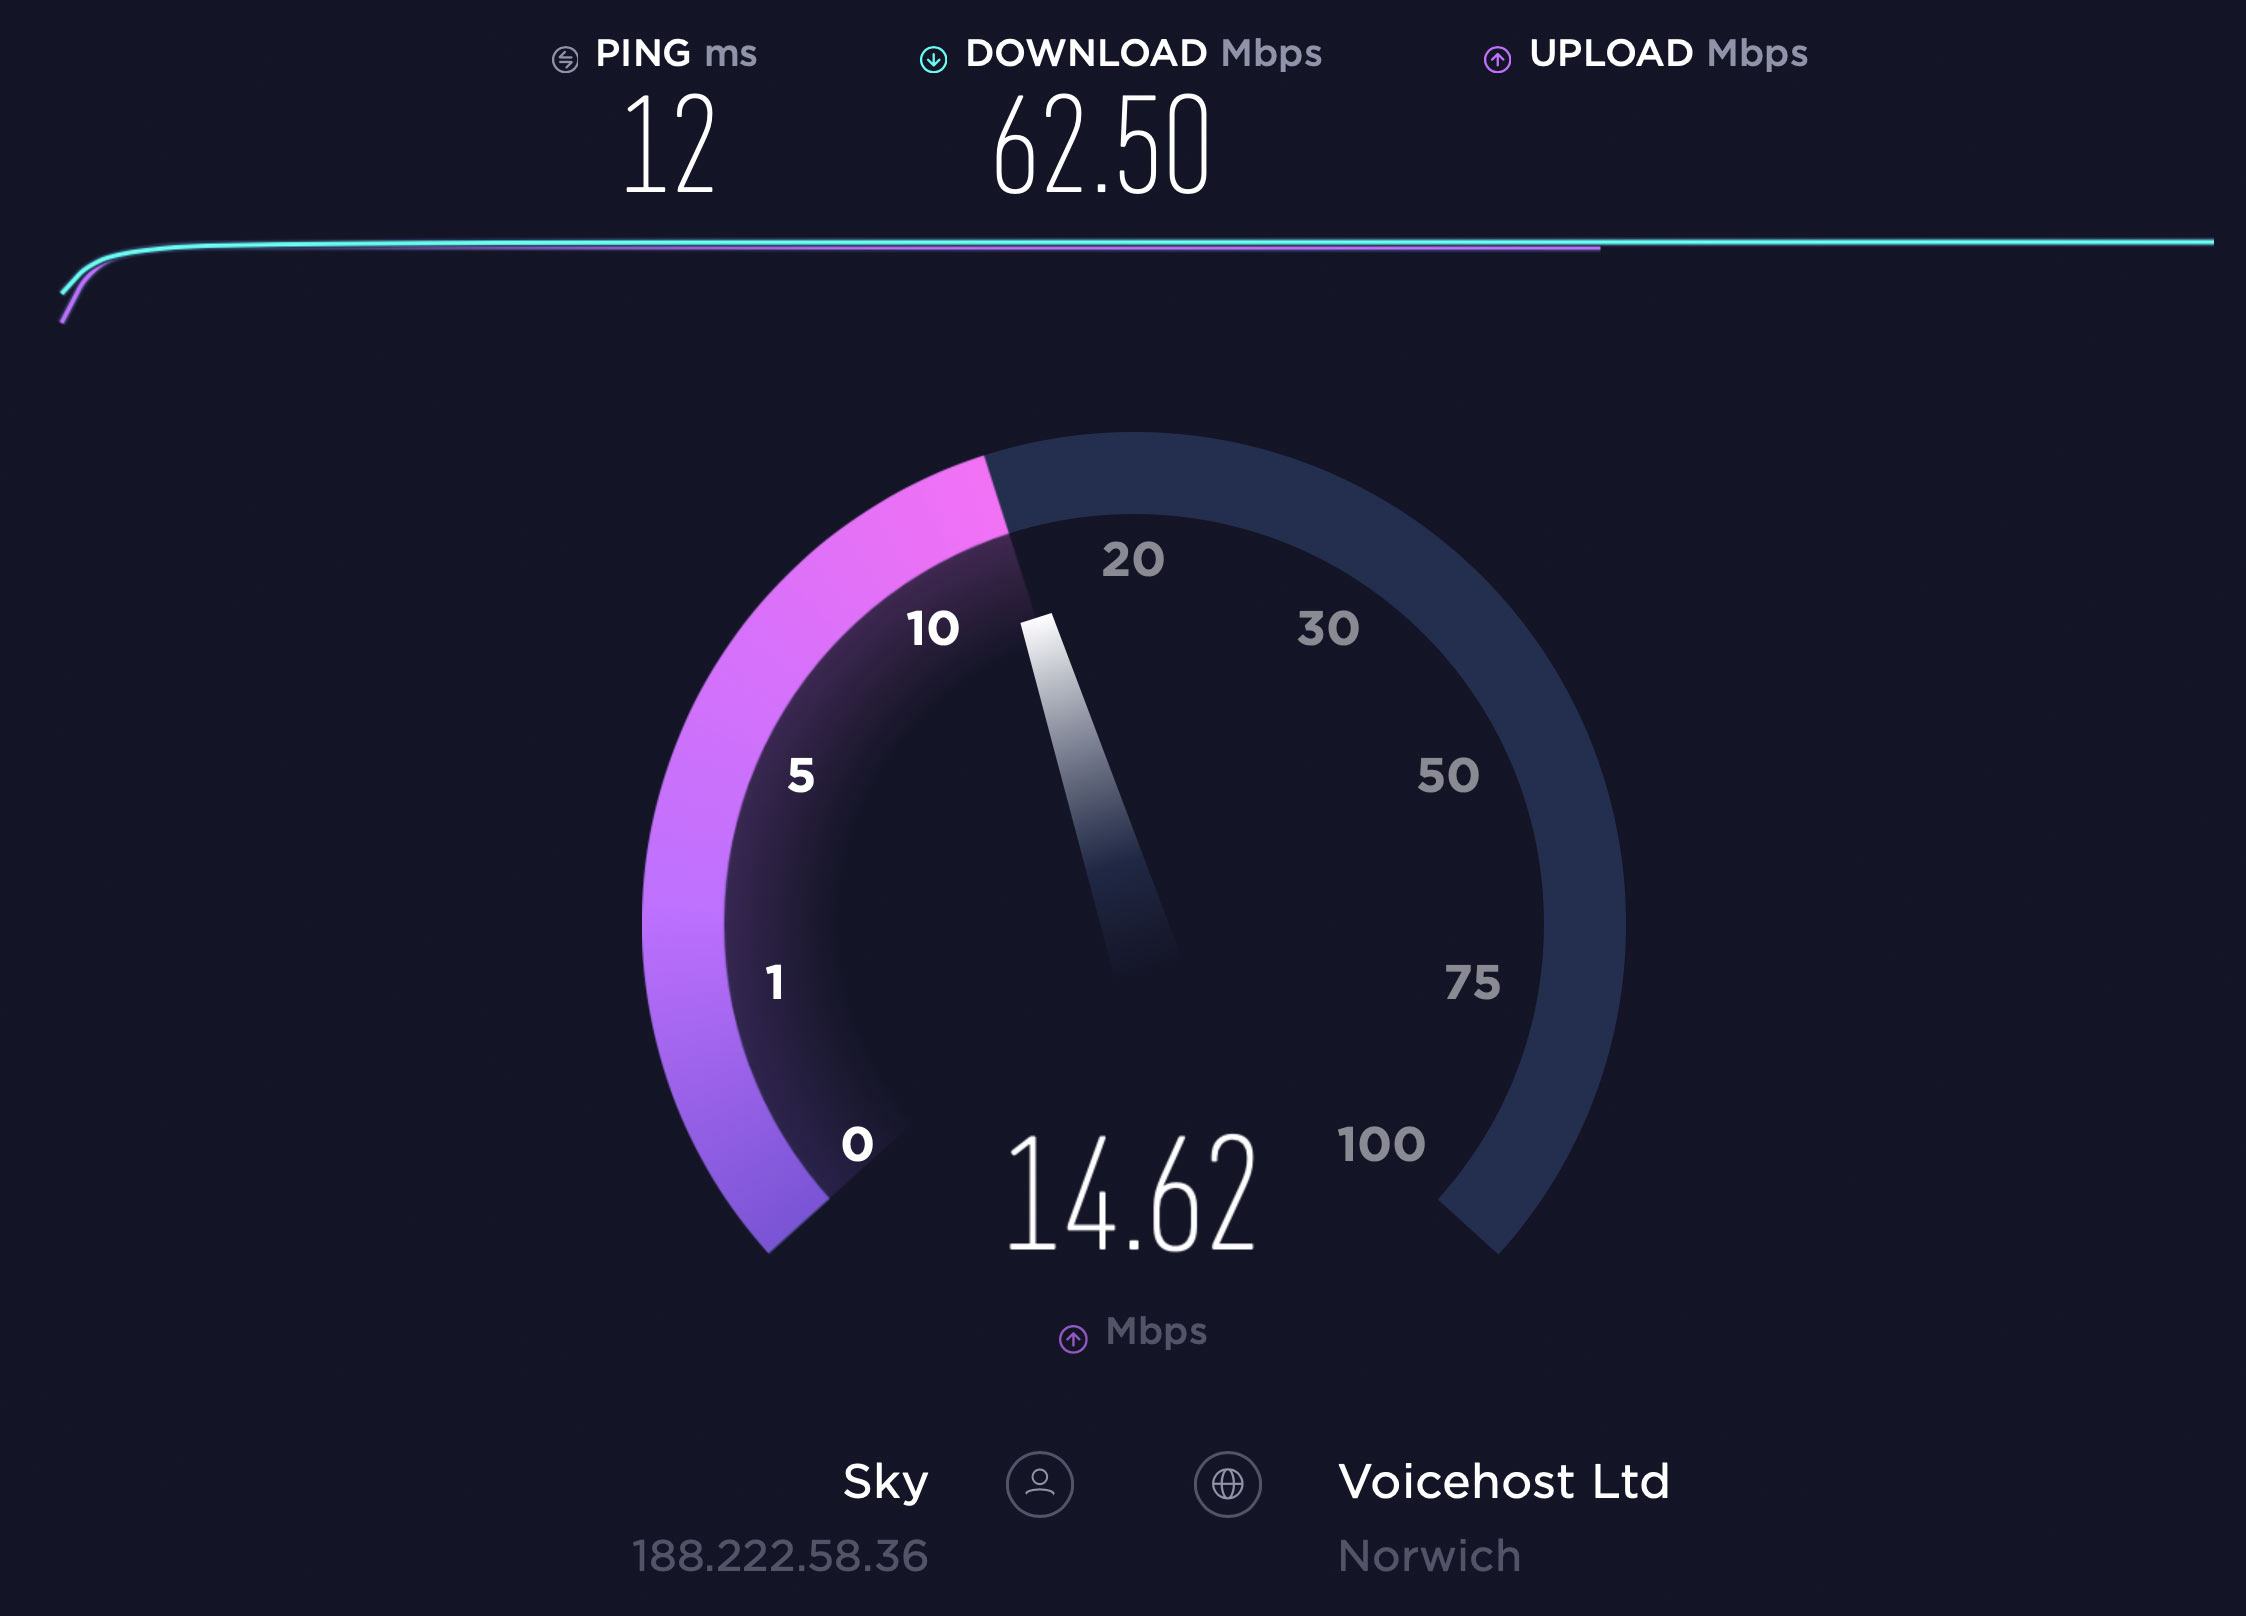 internet download speed test